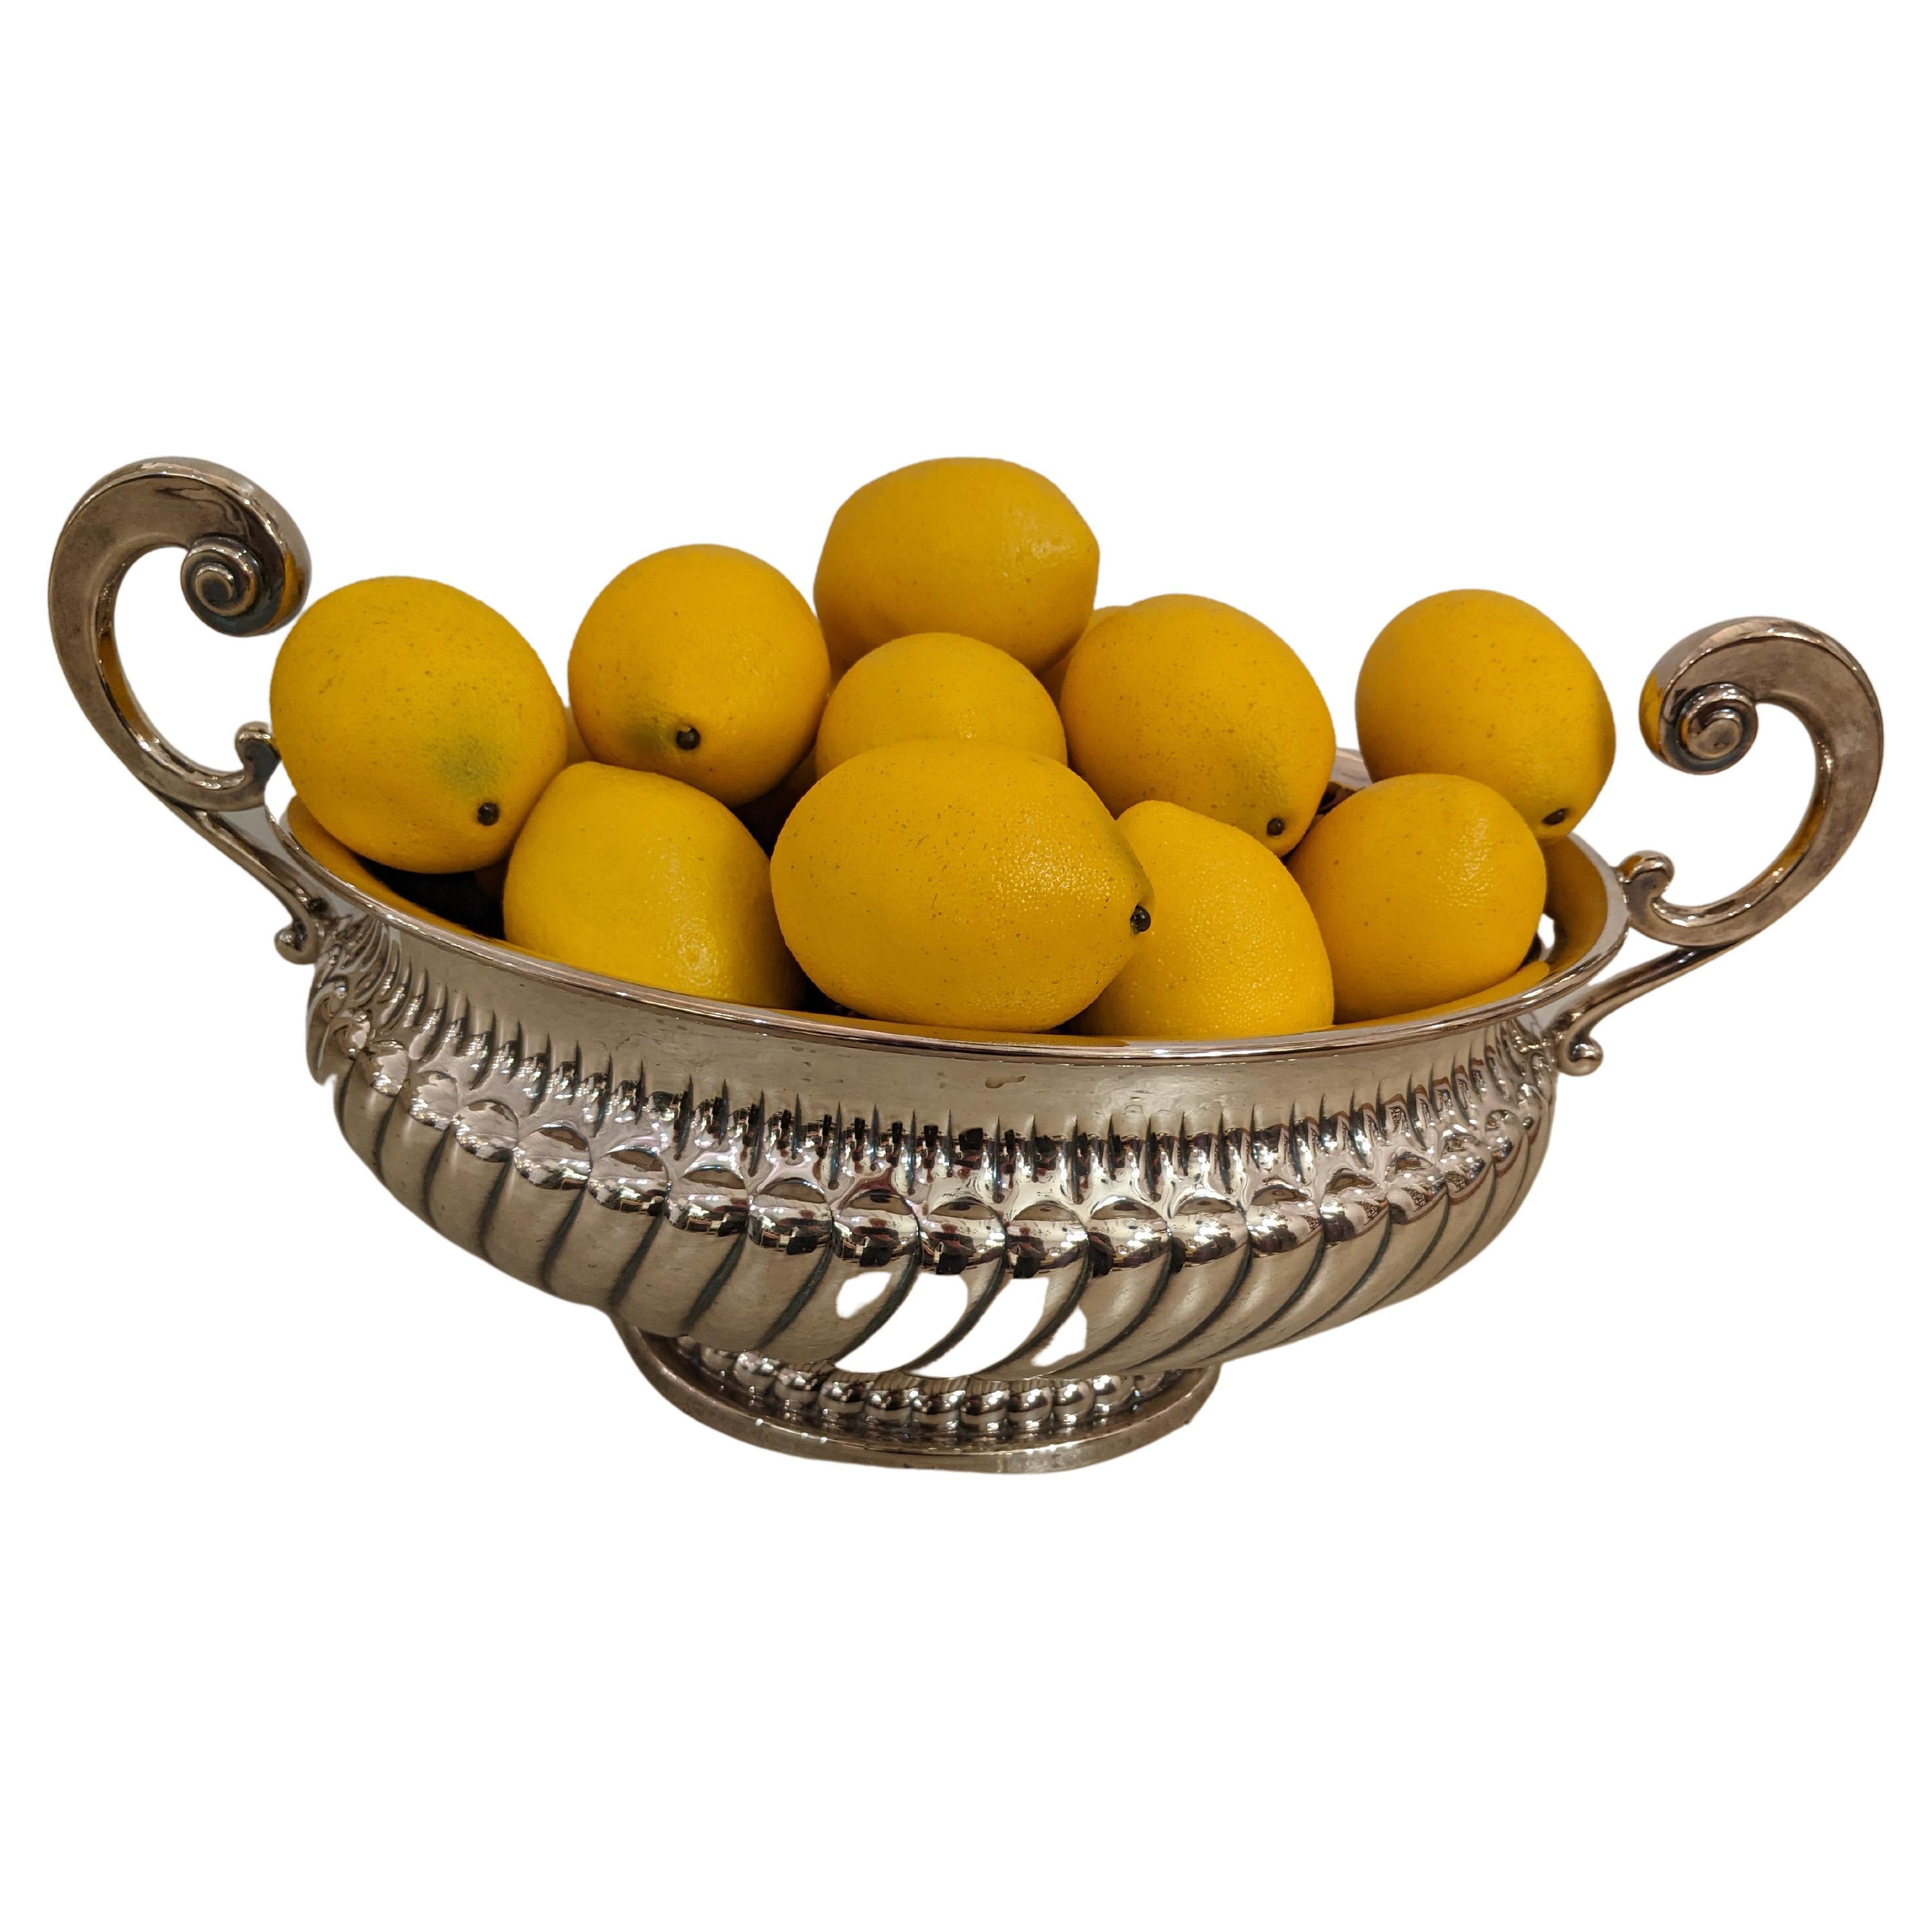 Eine auffällige versilberte Terrine mit Zitronen